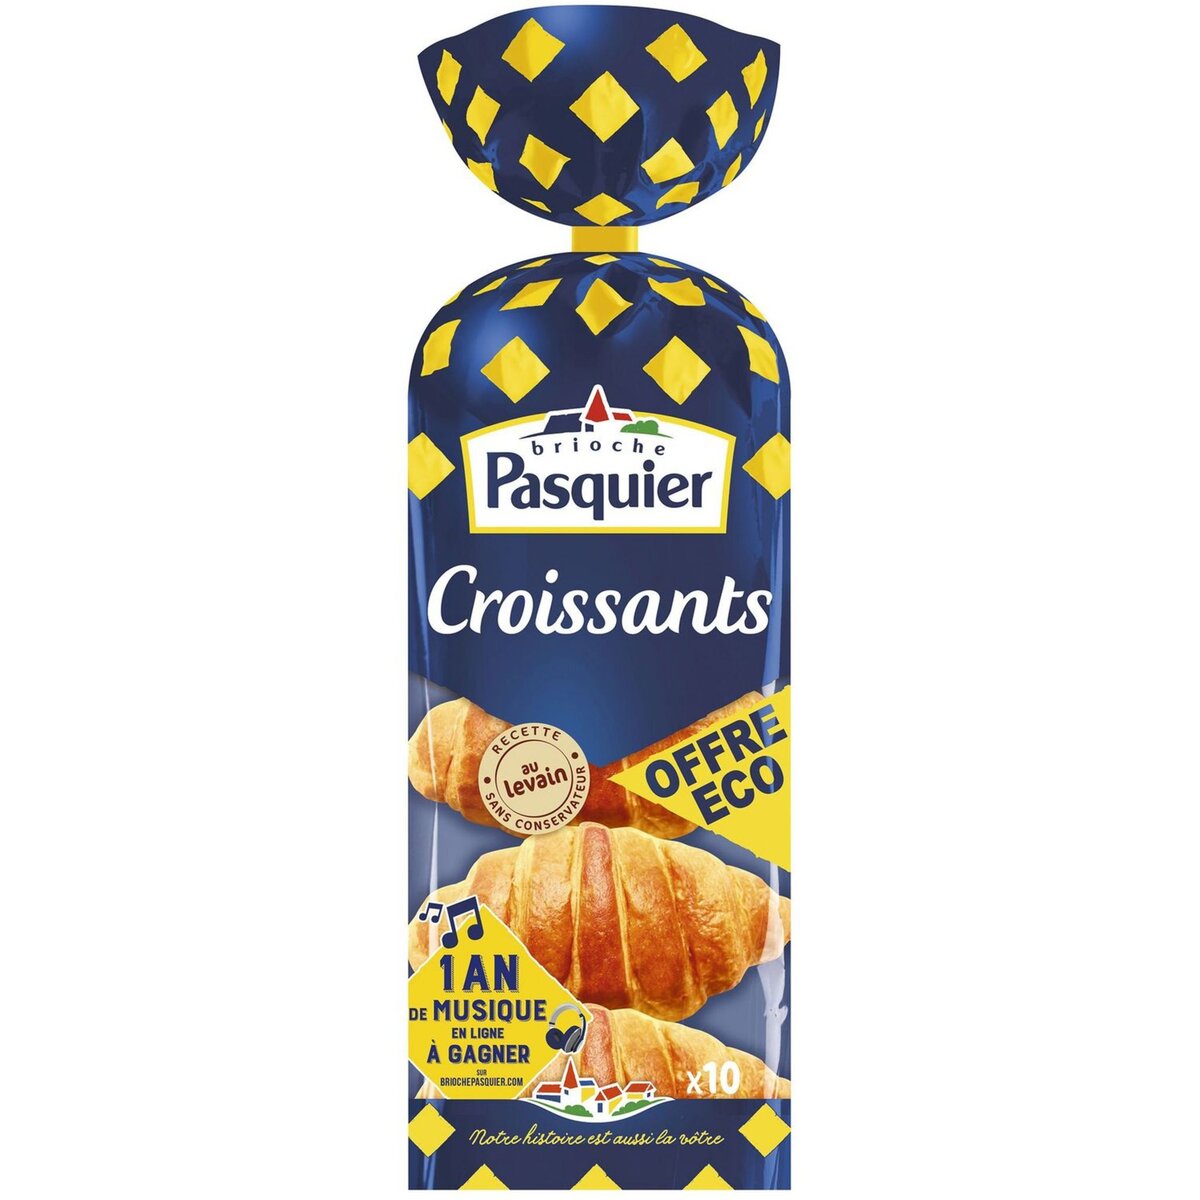 PASQUIER Pasquier croissants x10 -400g offre éco